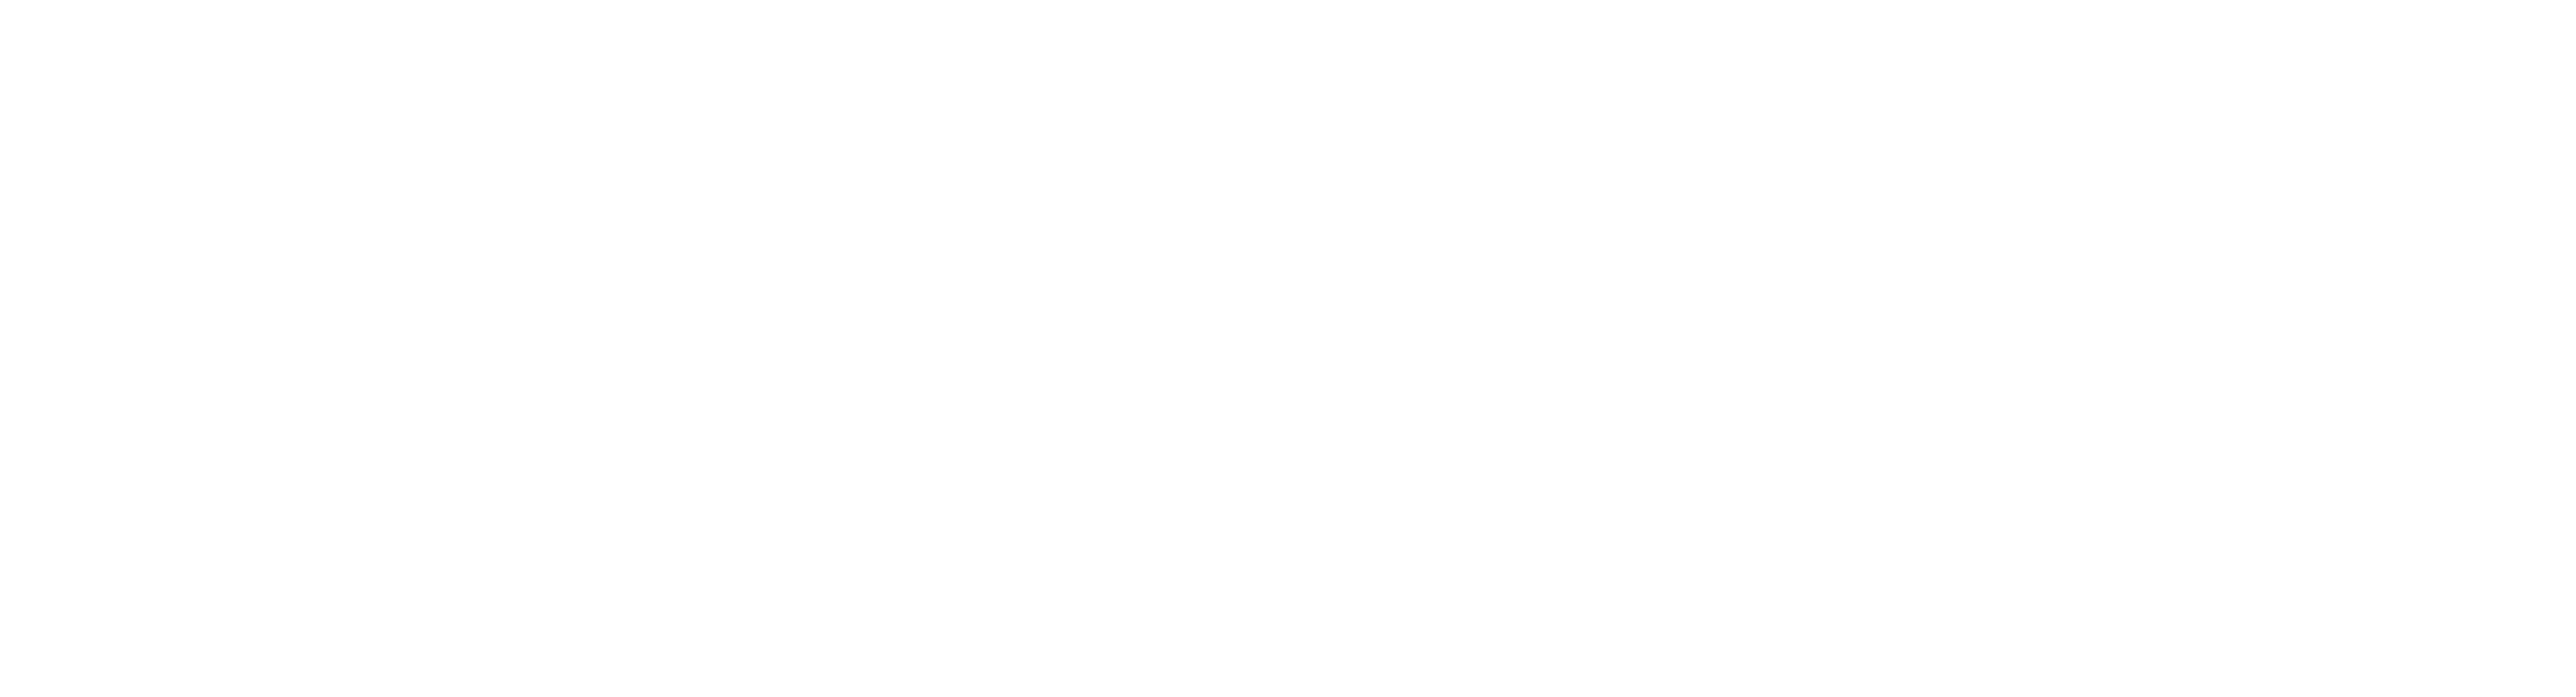 Wolf Hound logo